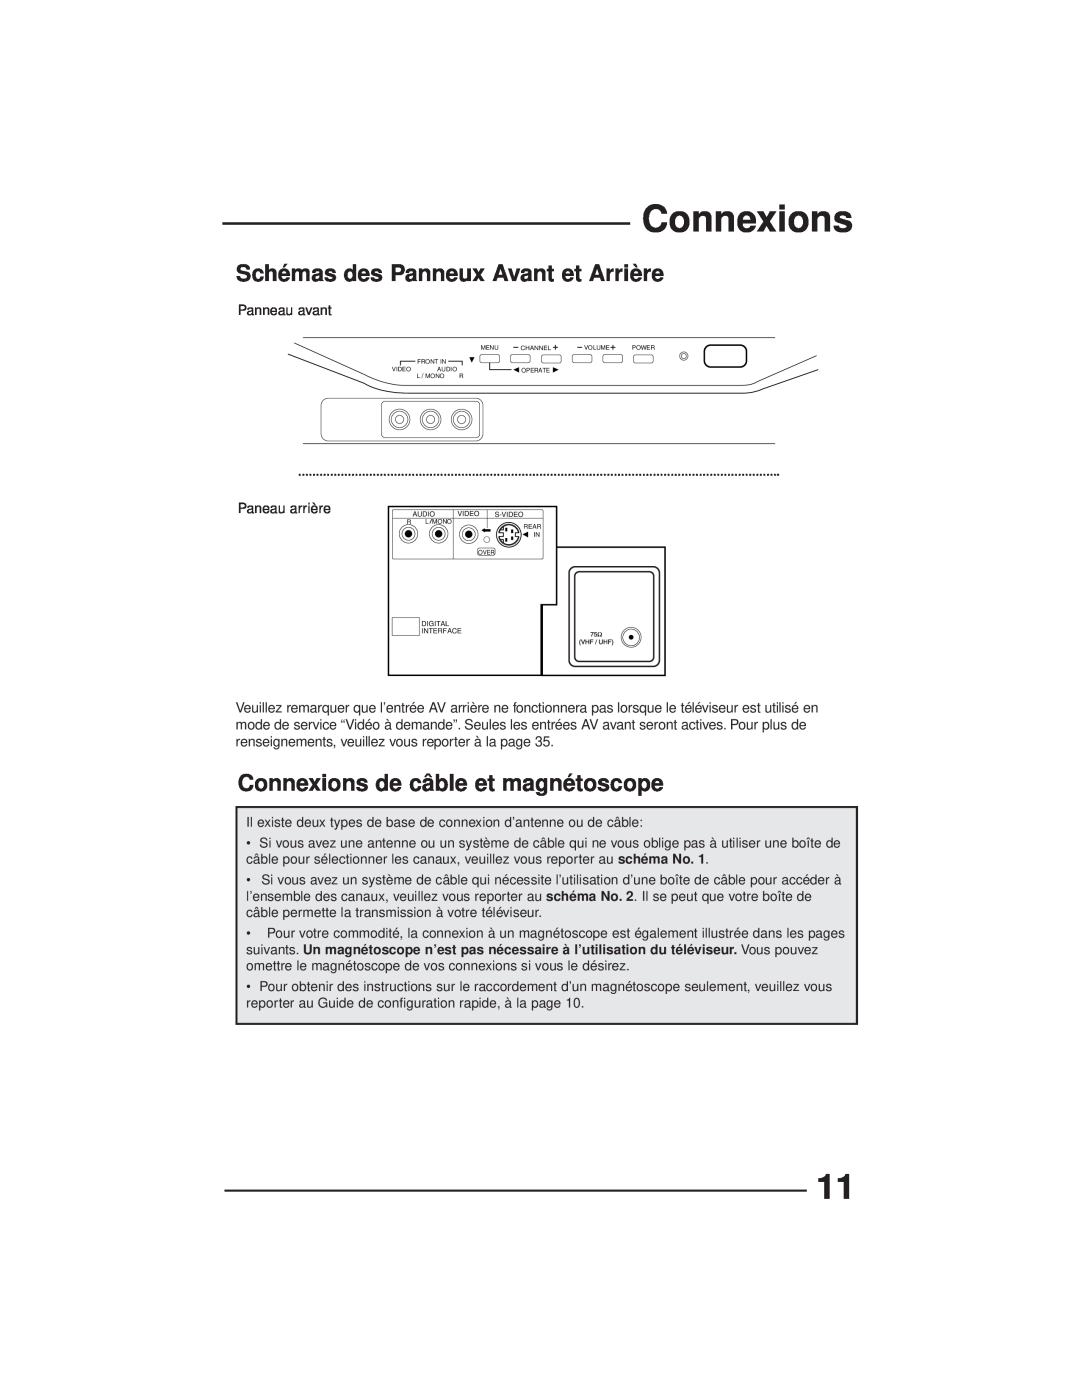 JVC AV-27GFH manual Schémas des Panneux Avant et Arrière, Connexions de câble et magnétoscope 